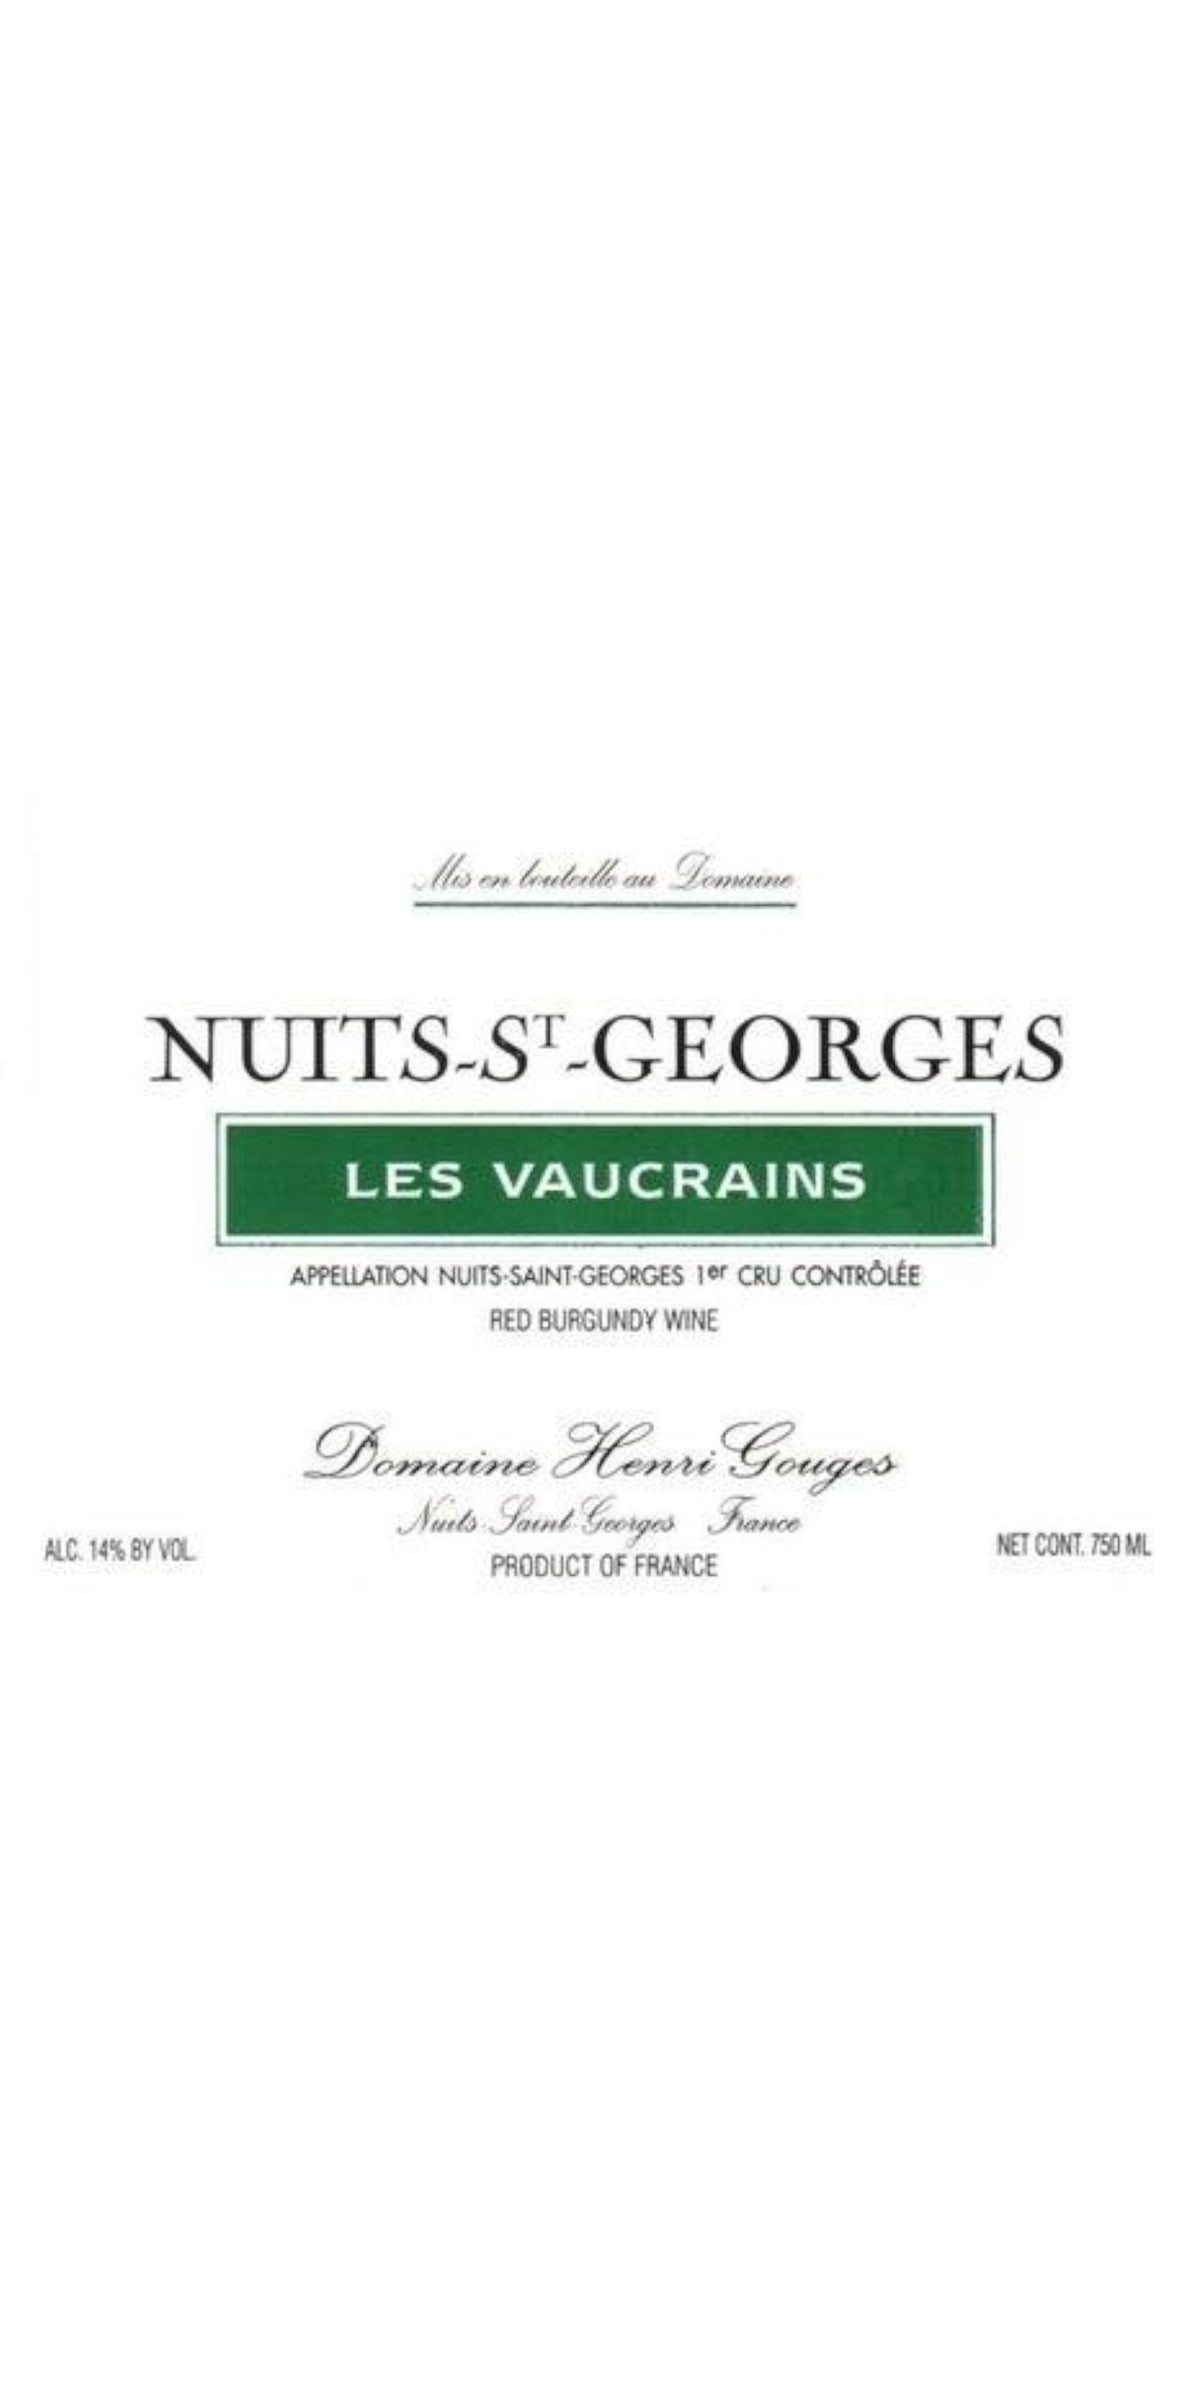 Domaine Henri Gouges, Nuits-St-George Premier Cru, Les Vaucrains, Cotes de Nuits 2009, 12 x 75cl, IN-BOND